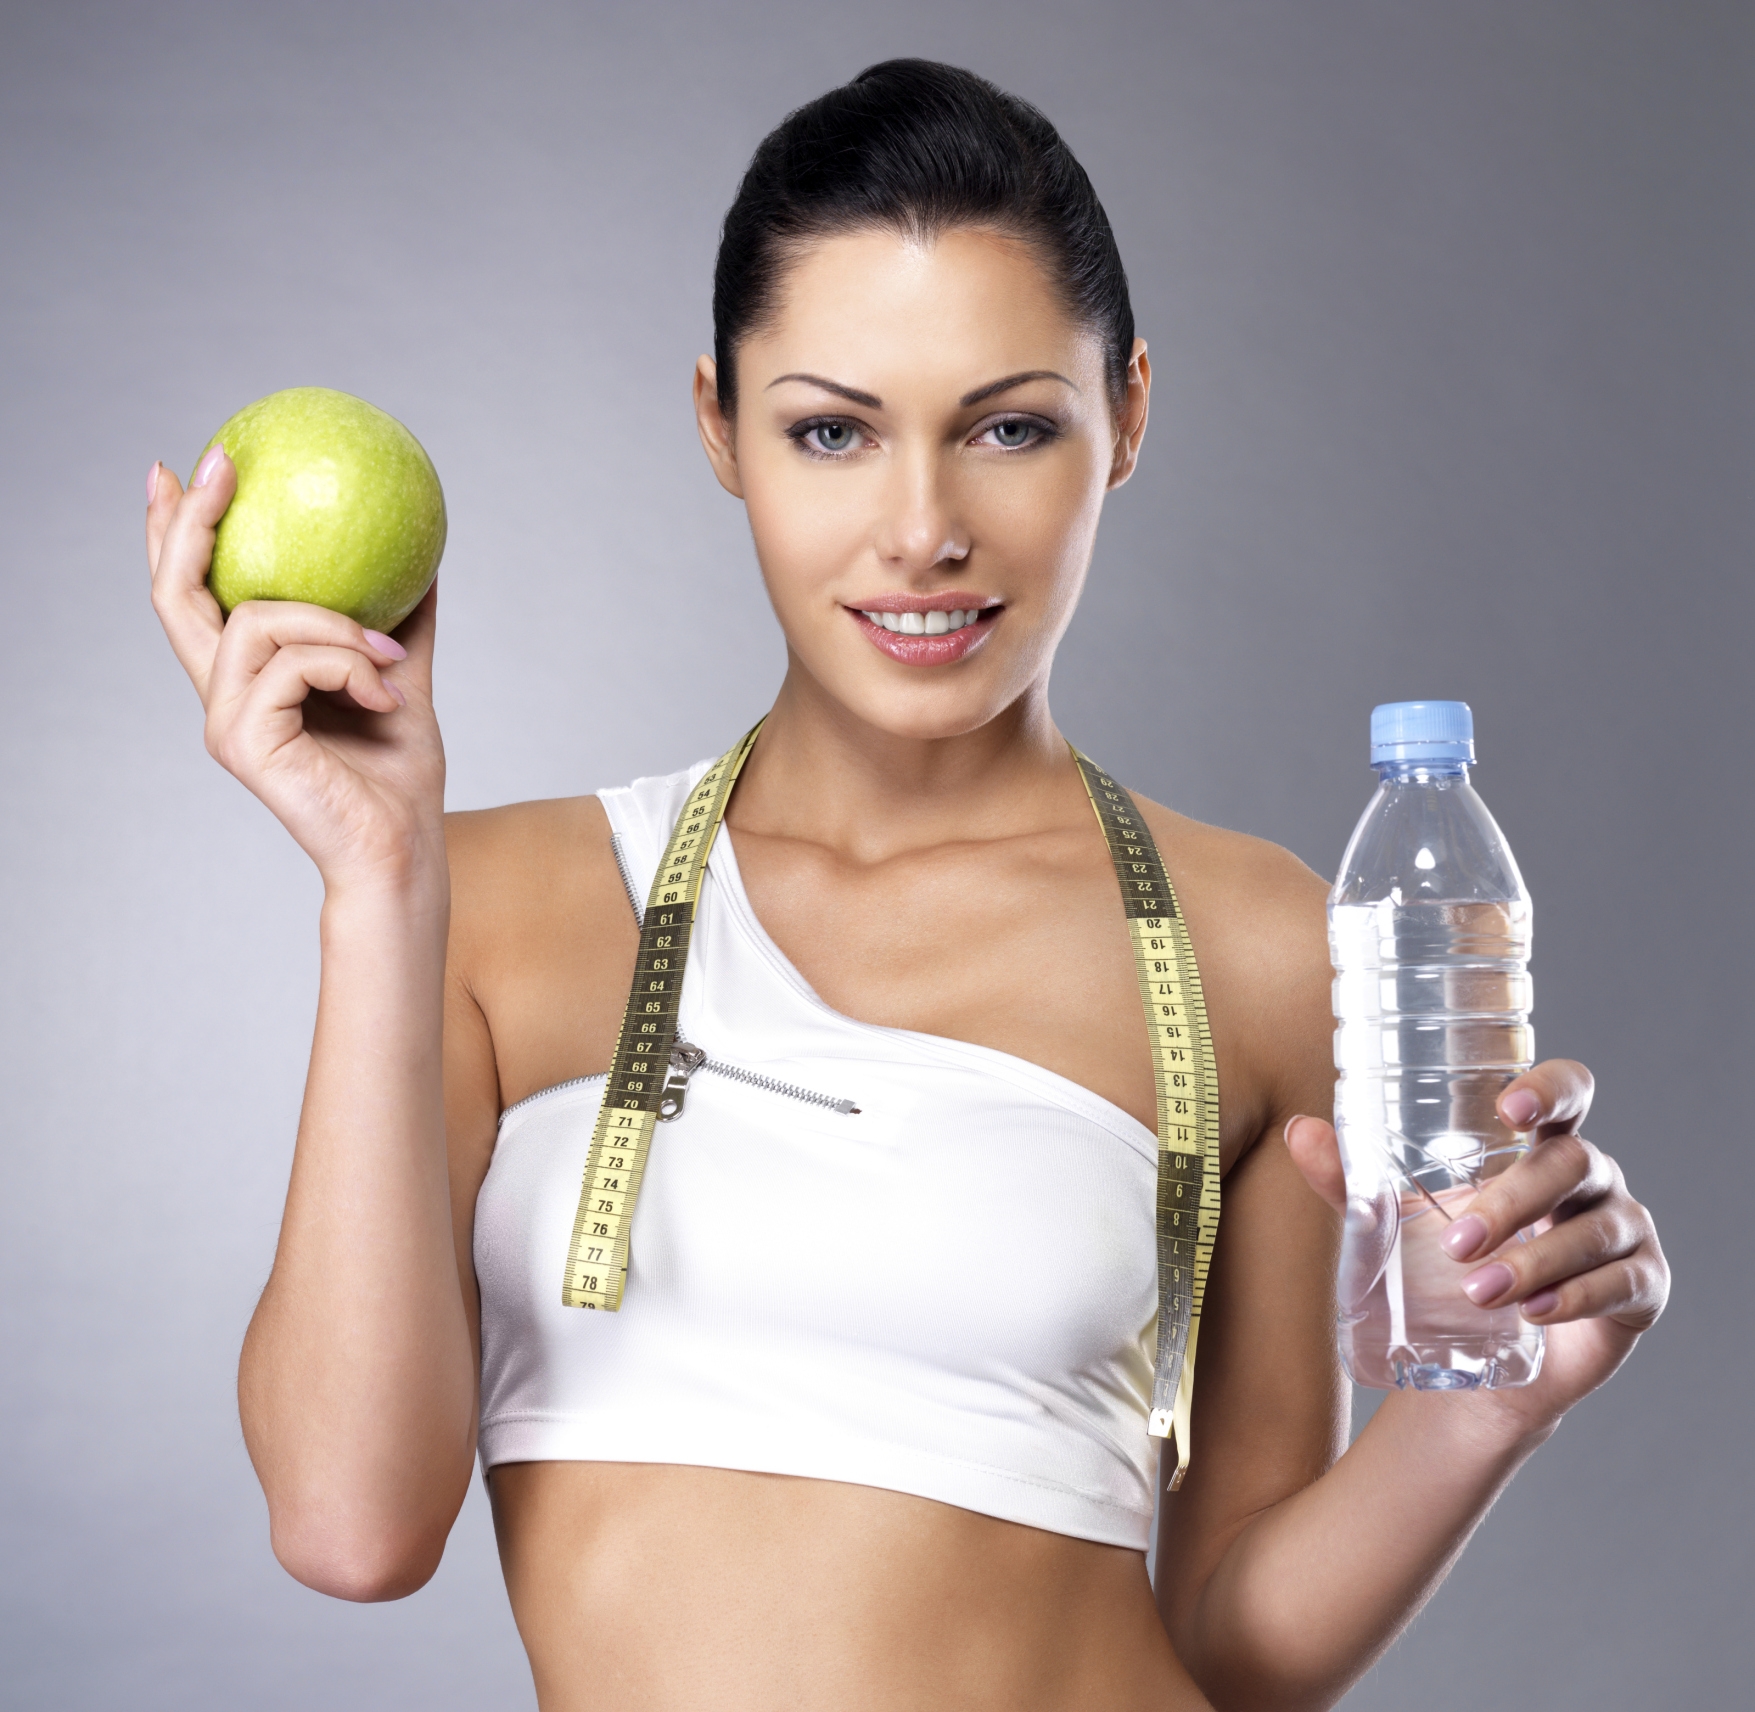 Фитнес и правильное питание